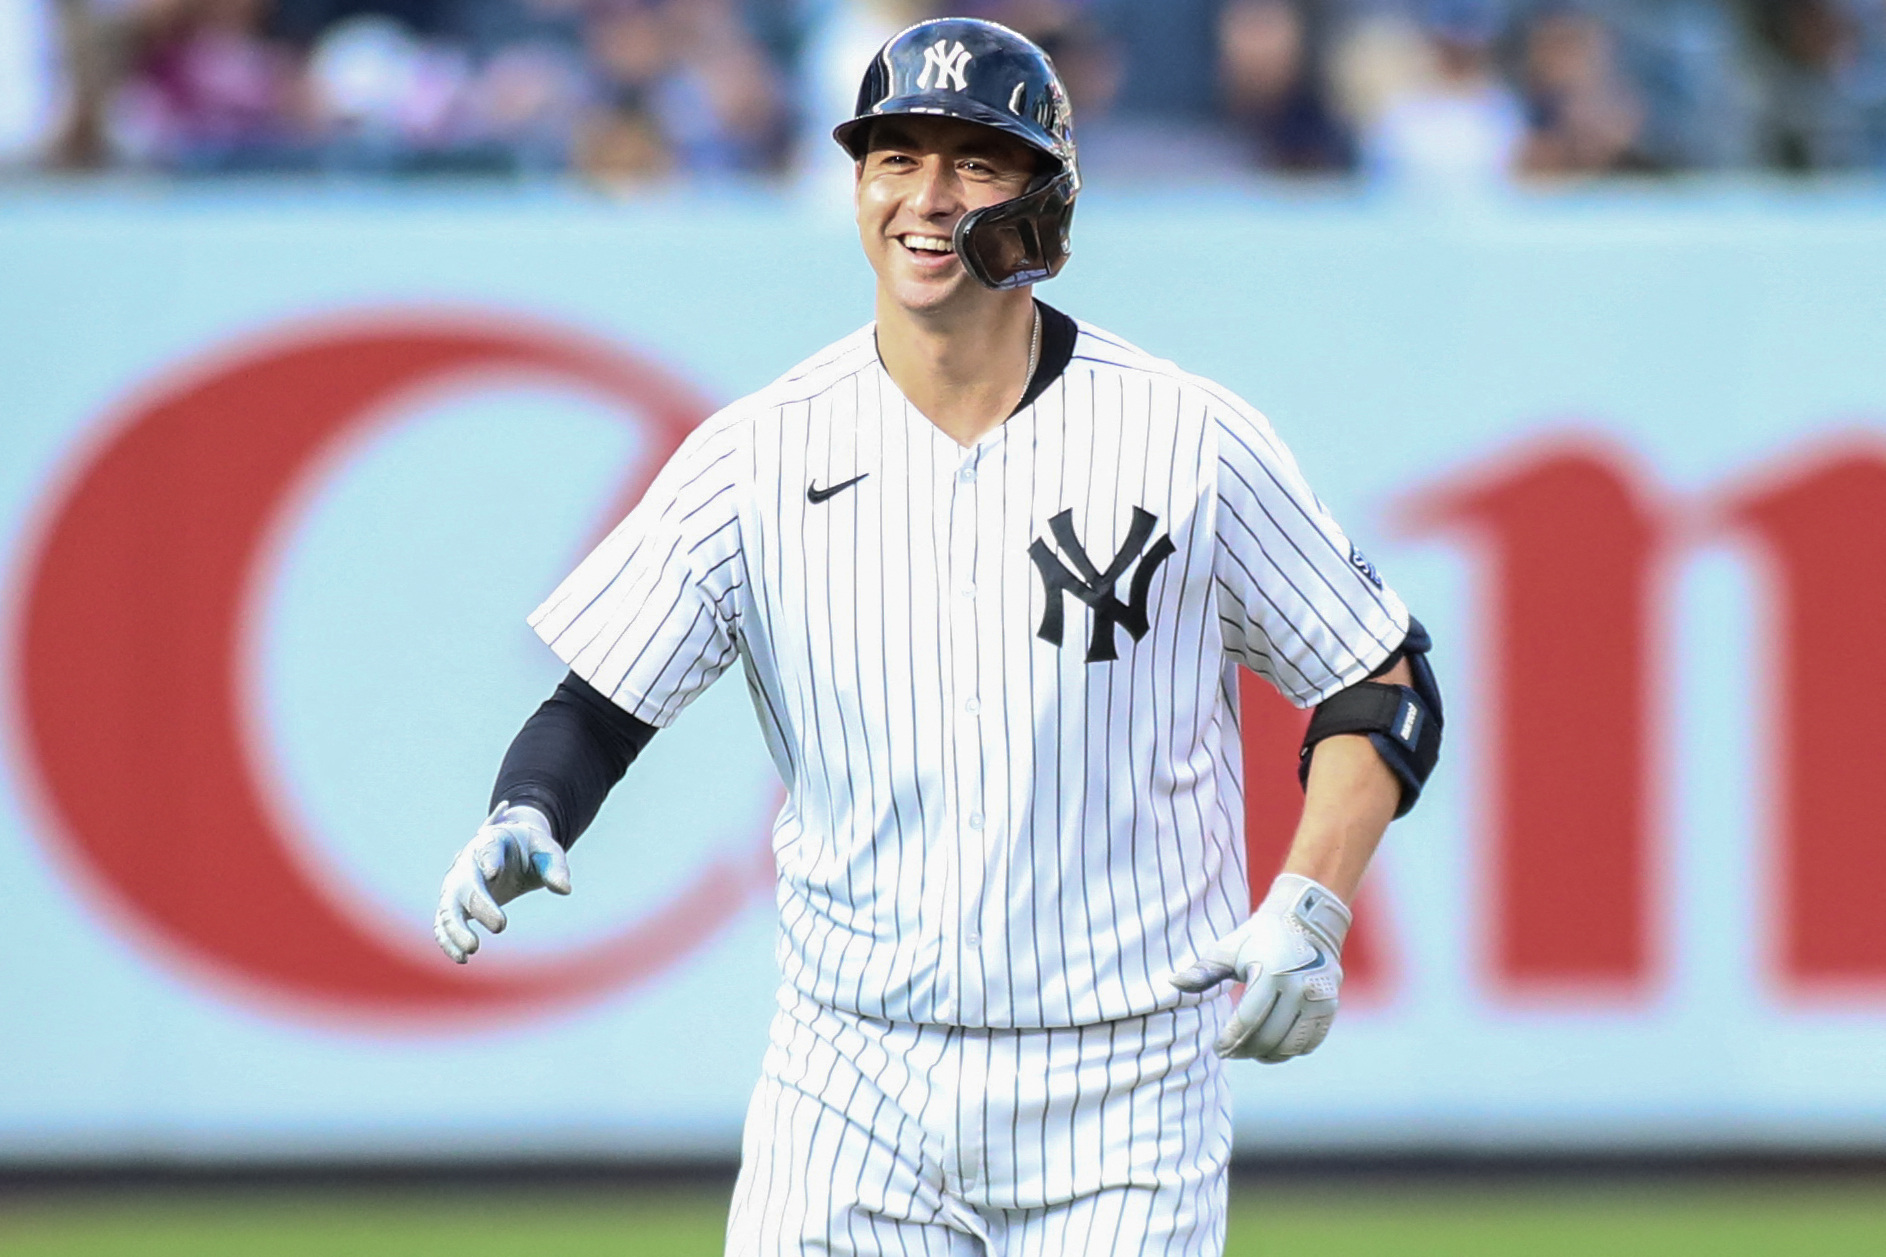 Yankees' Higashioka caps wild game with walk-off hit in 13th vs